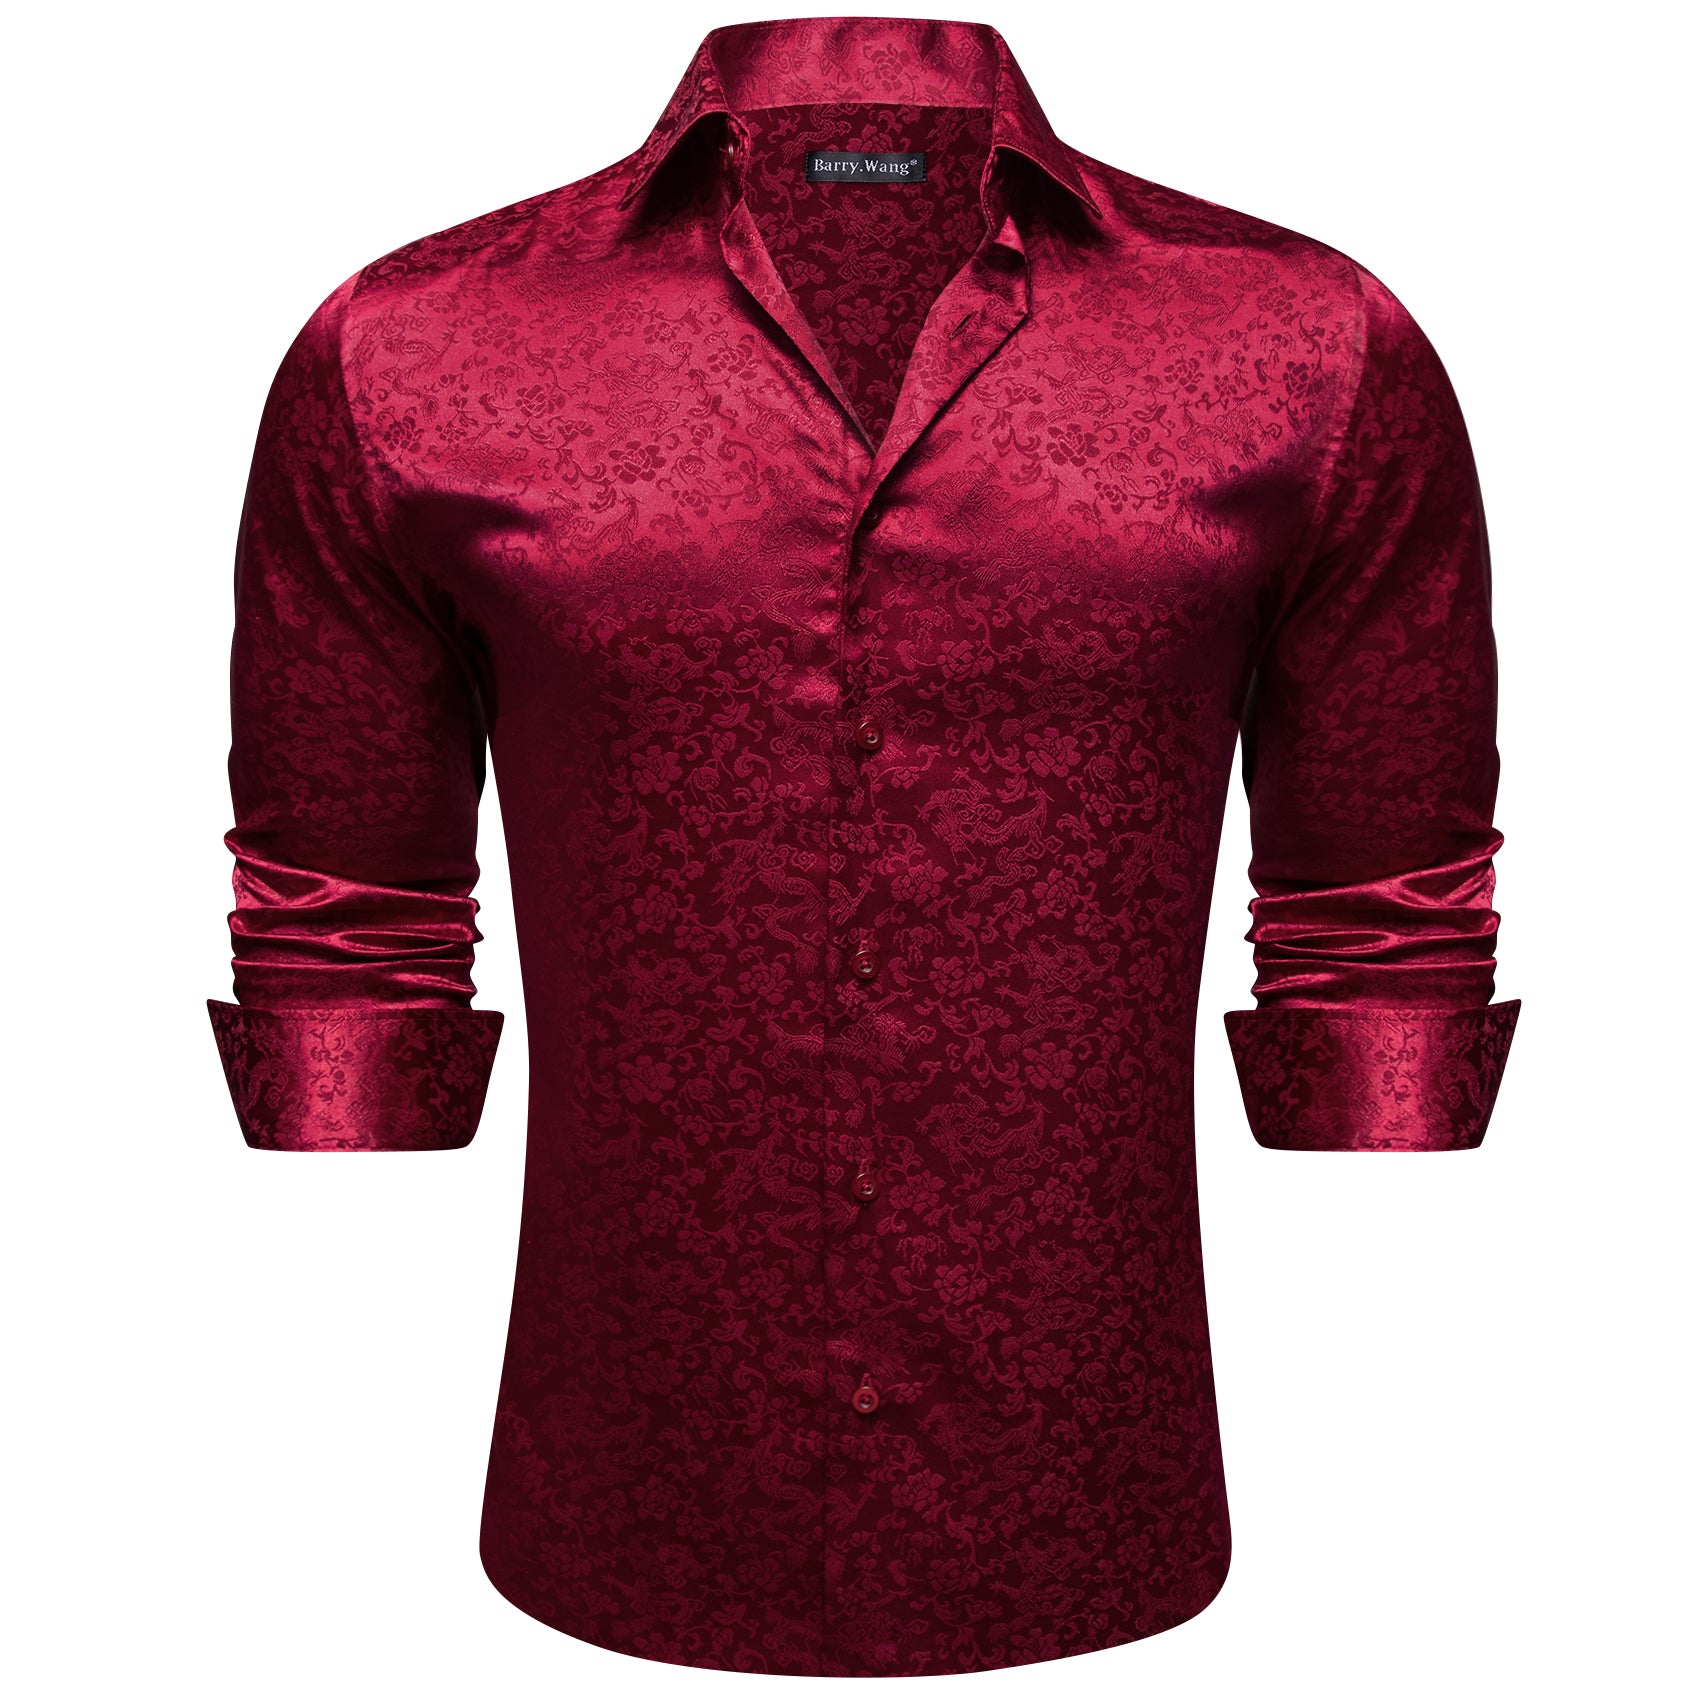 Barry.wang Dark Red Floral Silk Men's Shirt